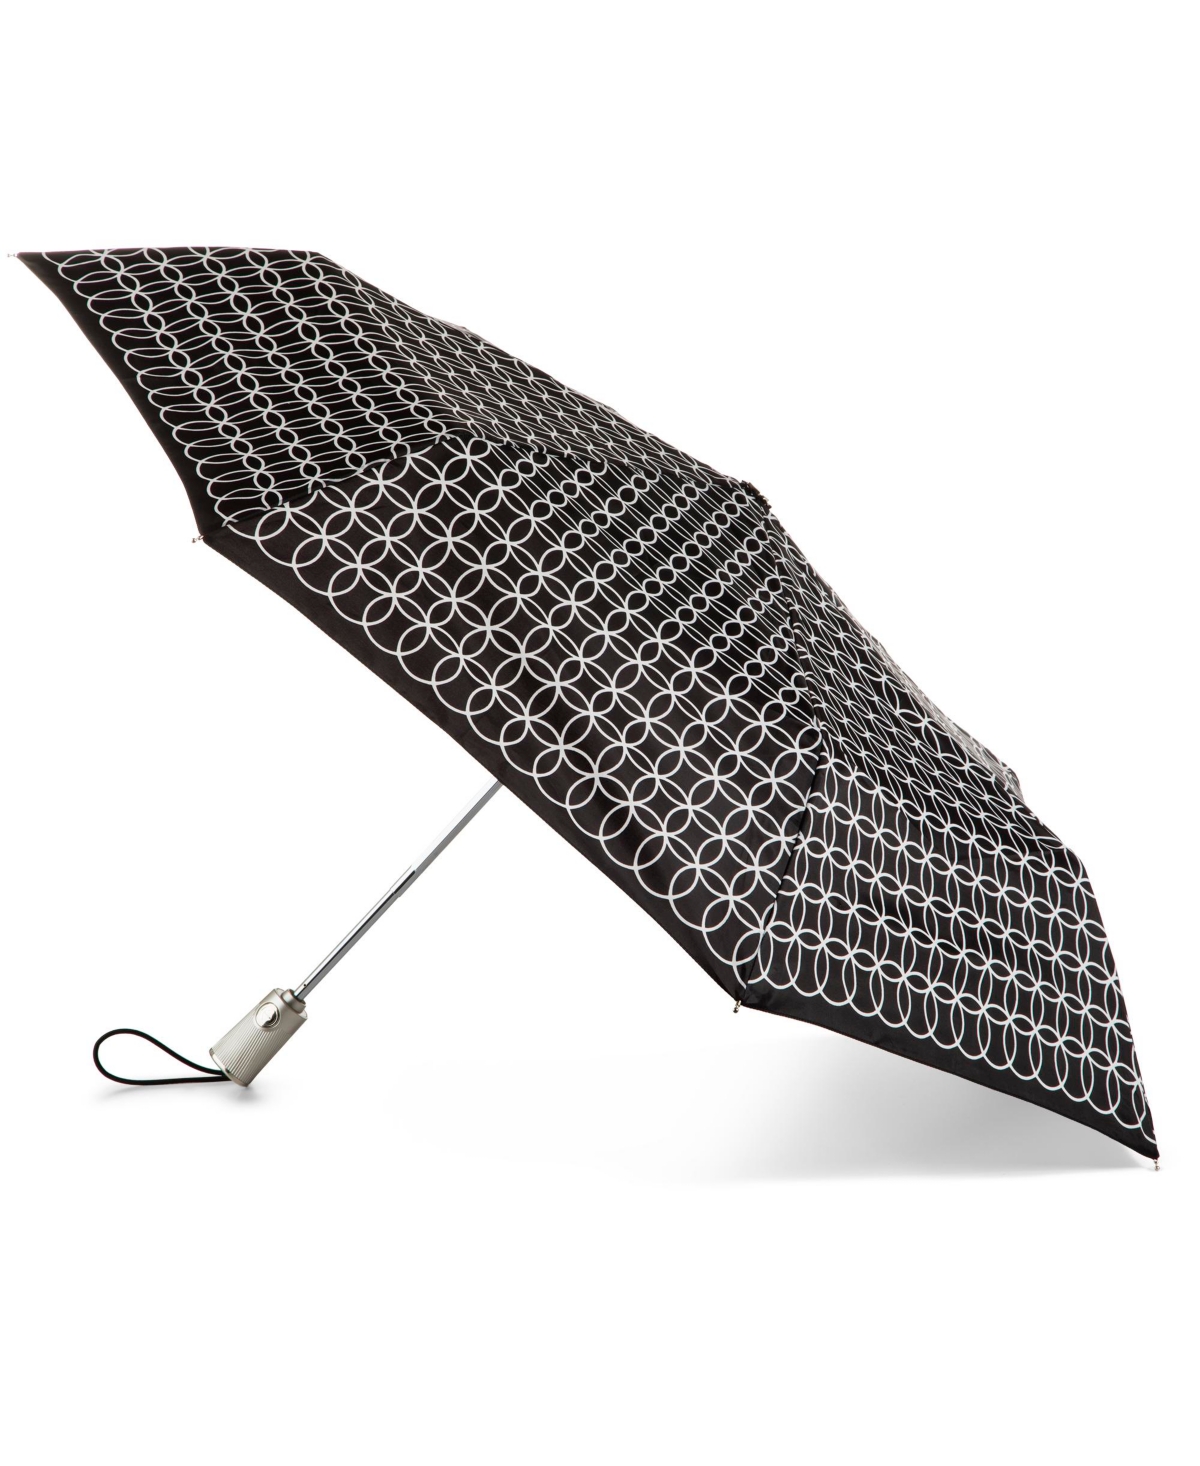 Totes Water Repellent Auto Open Close Folding Umbrella With Sunguard In Opera